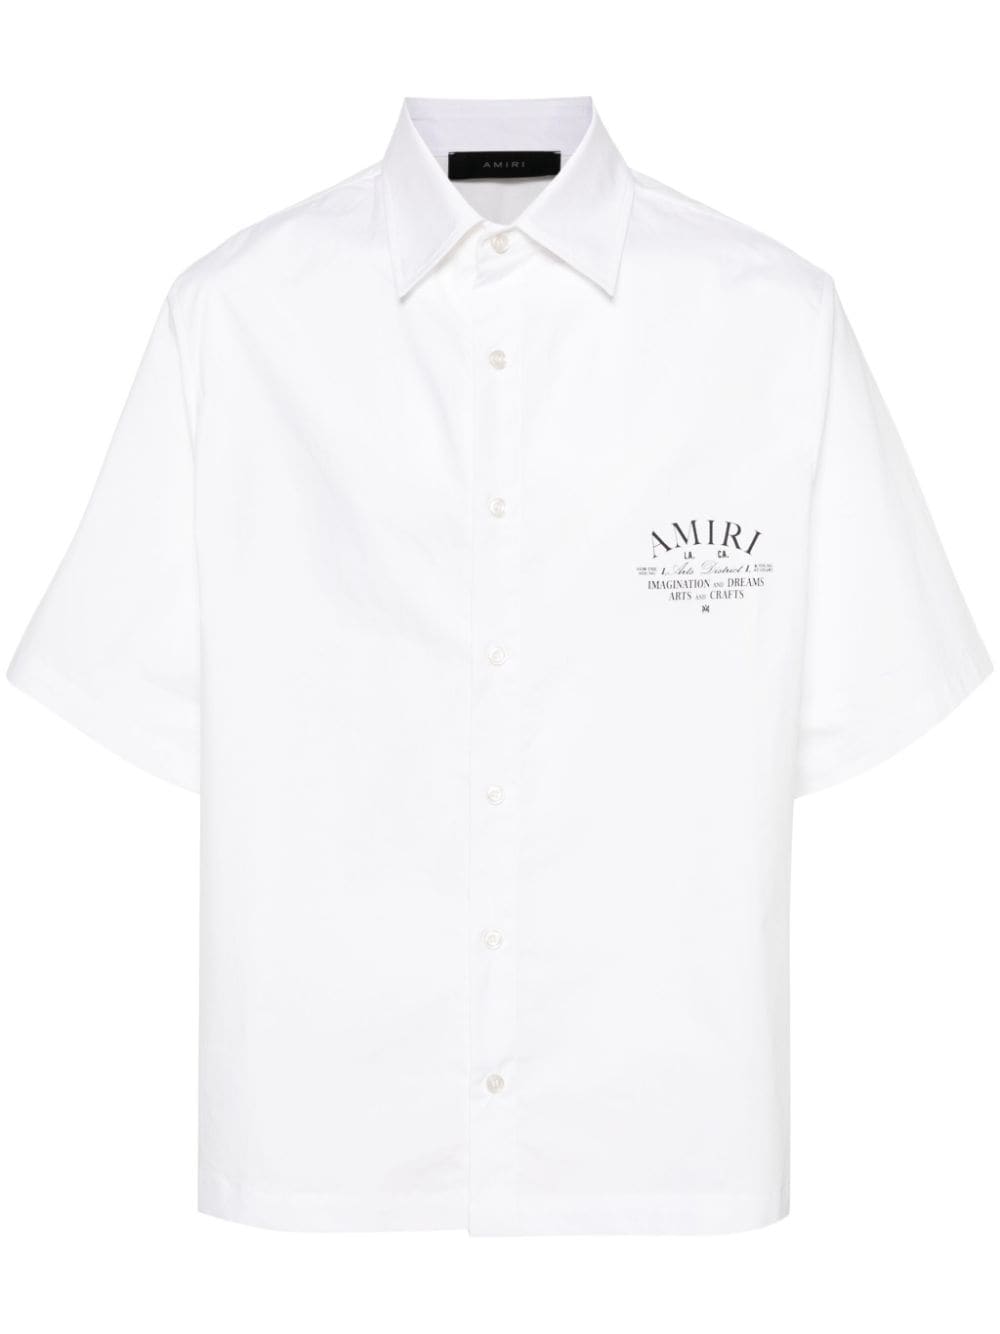 被忽略的品牌 - 深踹街头风情 - 原创涂印棉质男士白衬衫